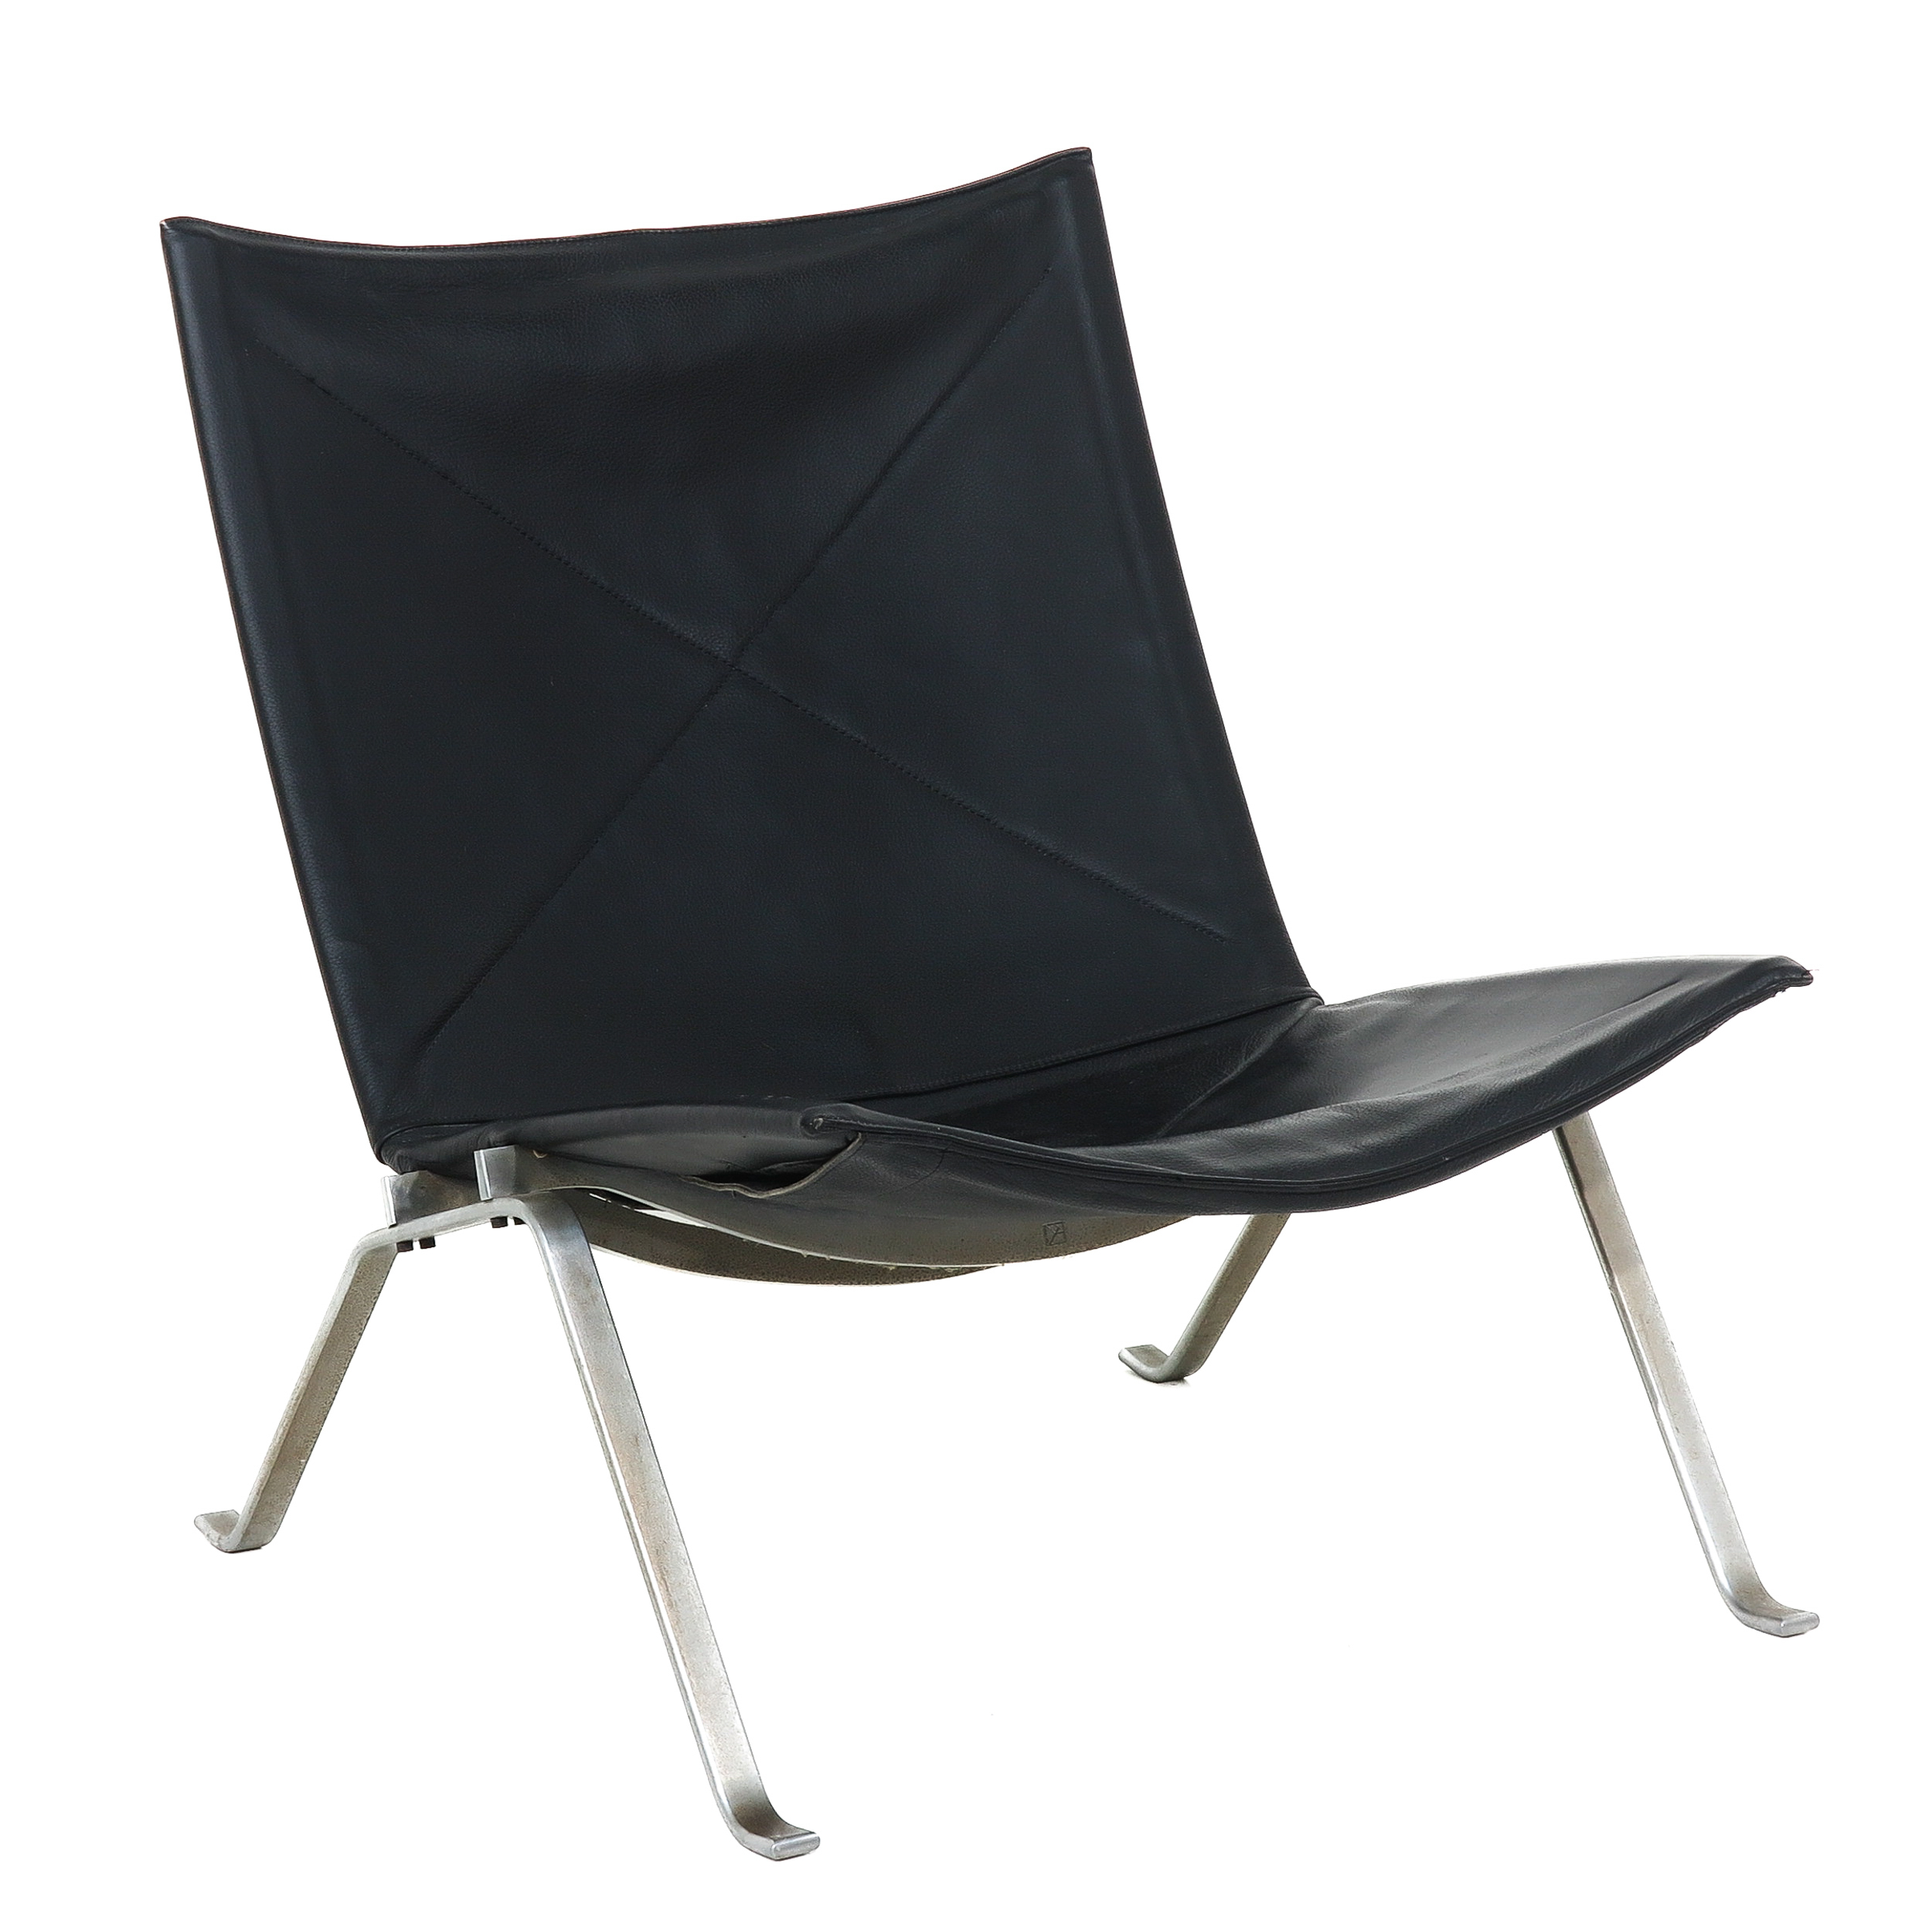 A Kjaer Holm Designer Chair